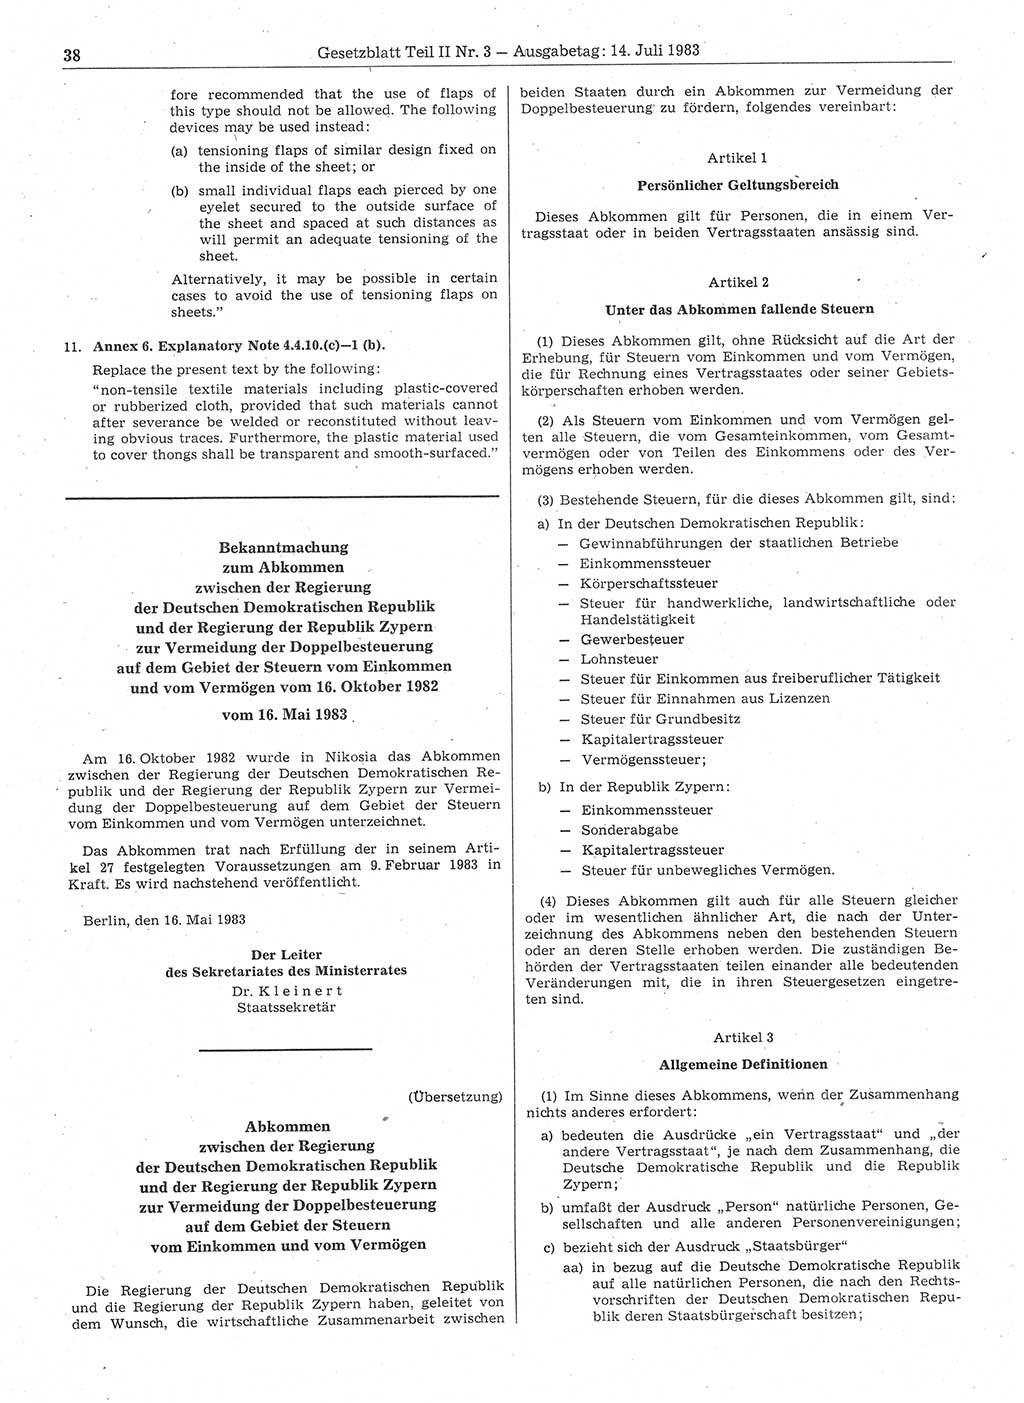 Gesetzblatt (GBl.) der Deutschen Demokratischen Republik (DDR) Teil ⅠⅠ 1983, Seite 38 (GBl. DDR ⅠⅠ 1983, S. 38)